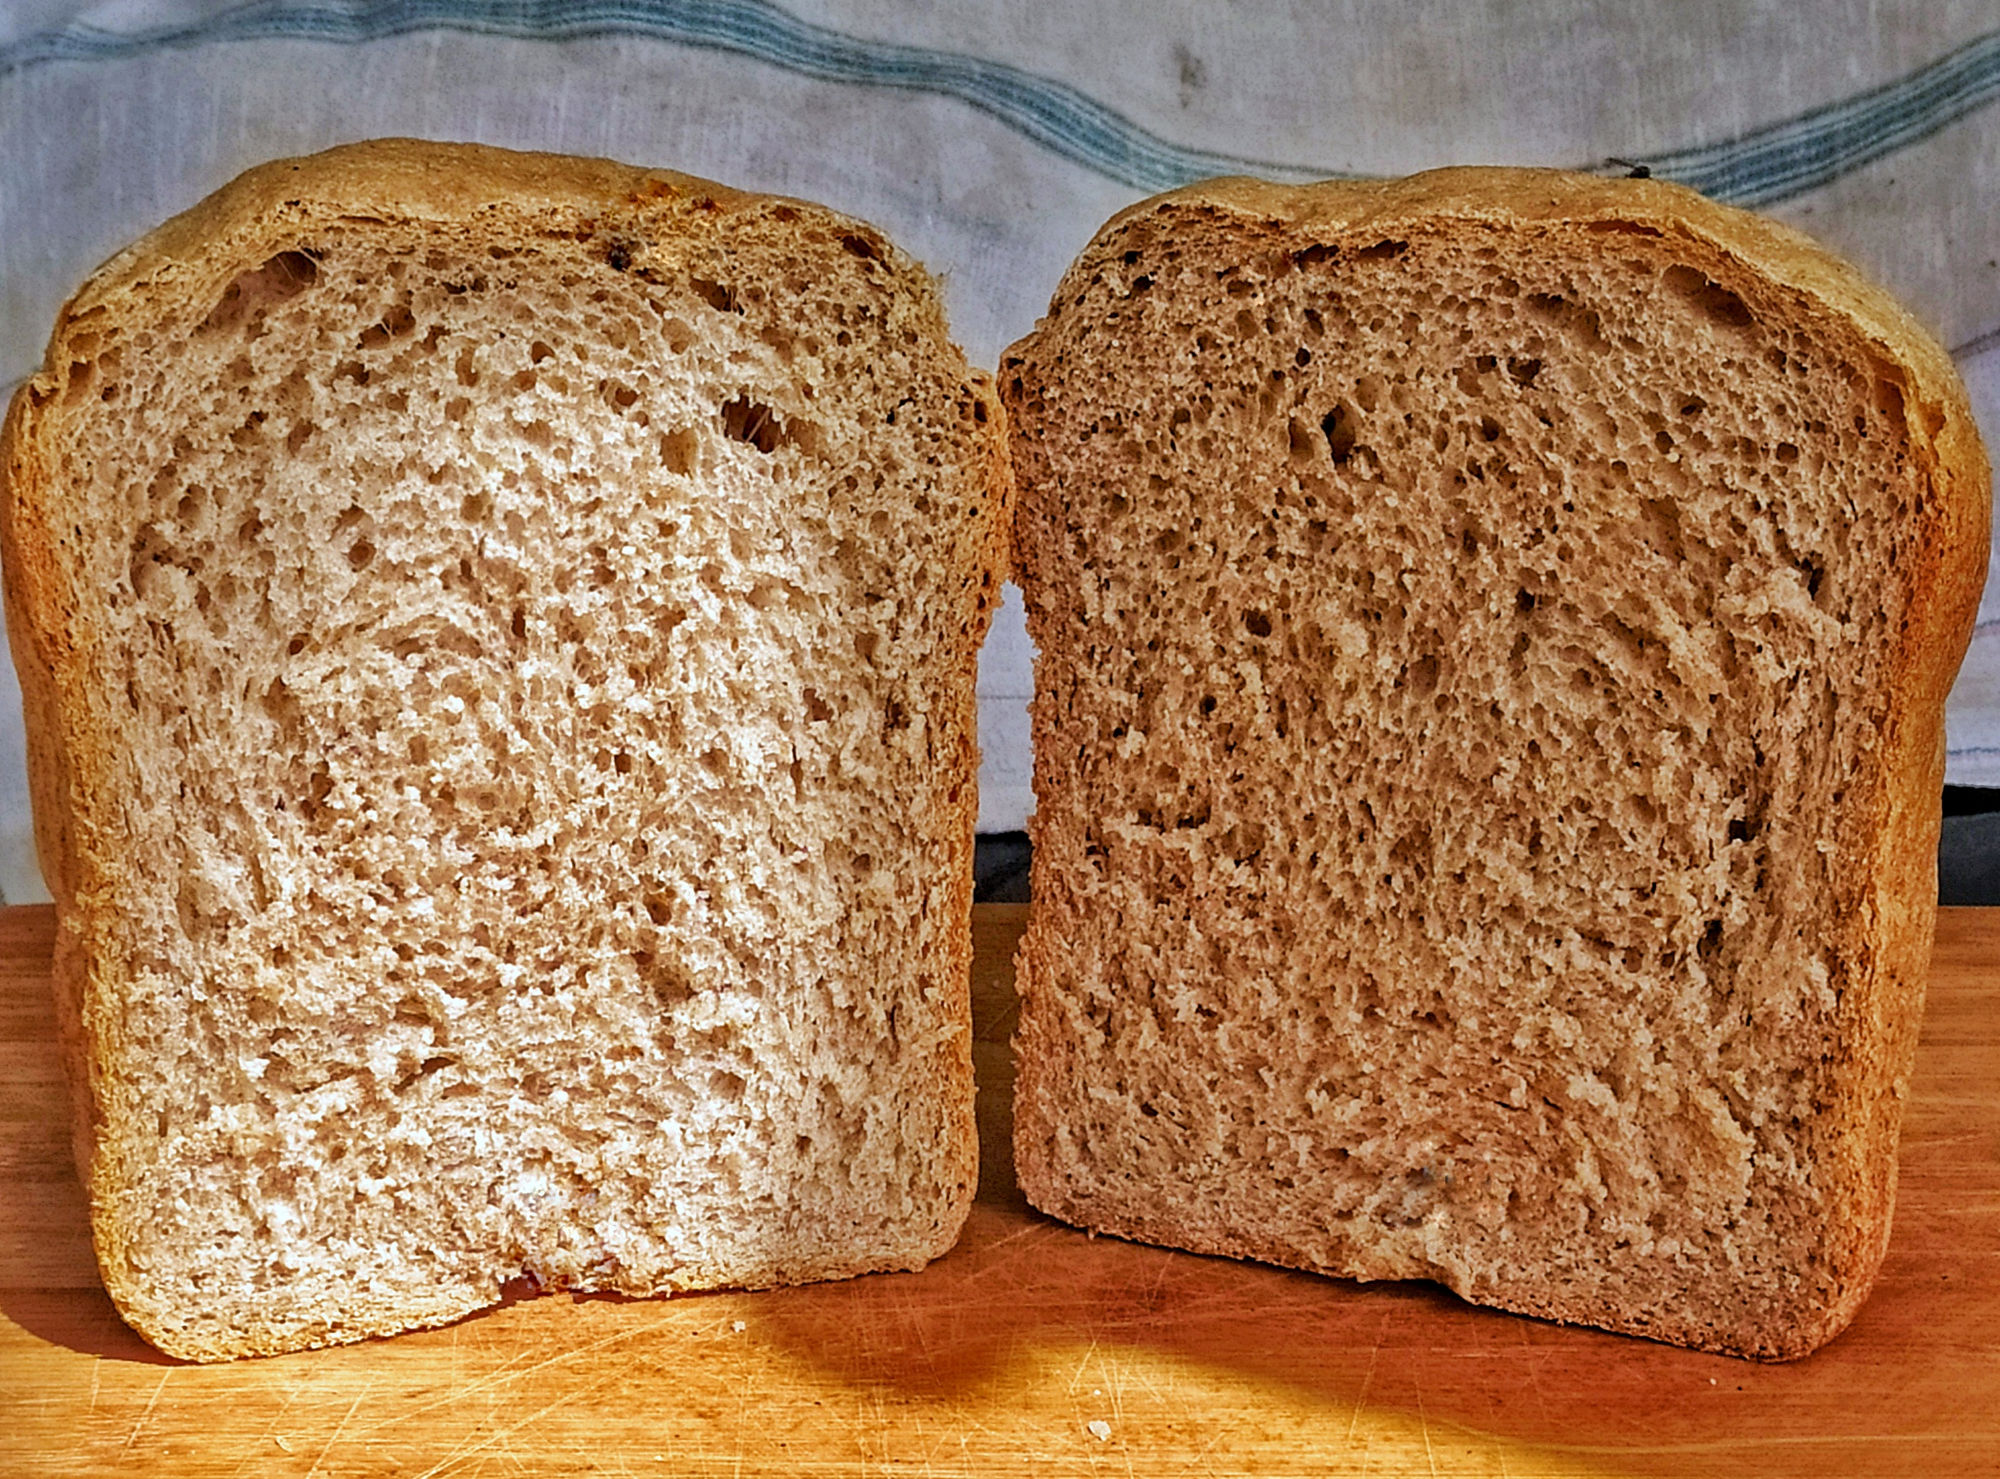 Цельнозерновой хлеб без кефира. Ржано-пшеничный хлеб с отрубями. Мука с отрубями для хлебопечки. Хлеб из цельнозерновой муки. Ржаной цельнозерновой хлеб.